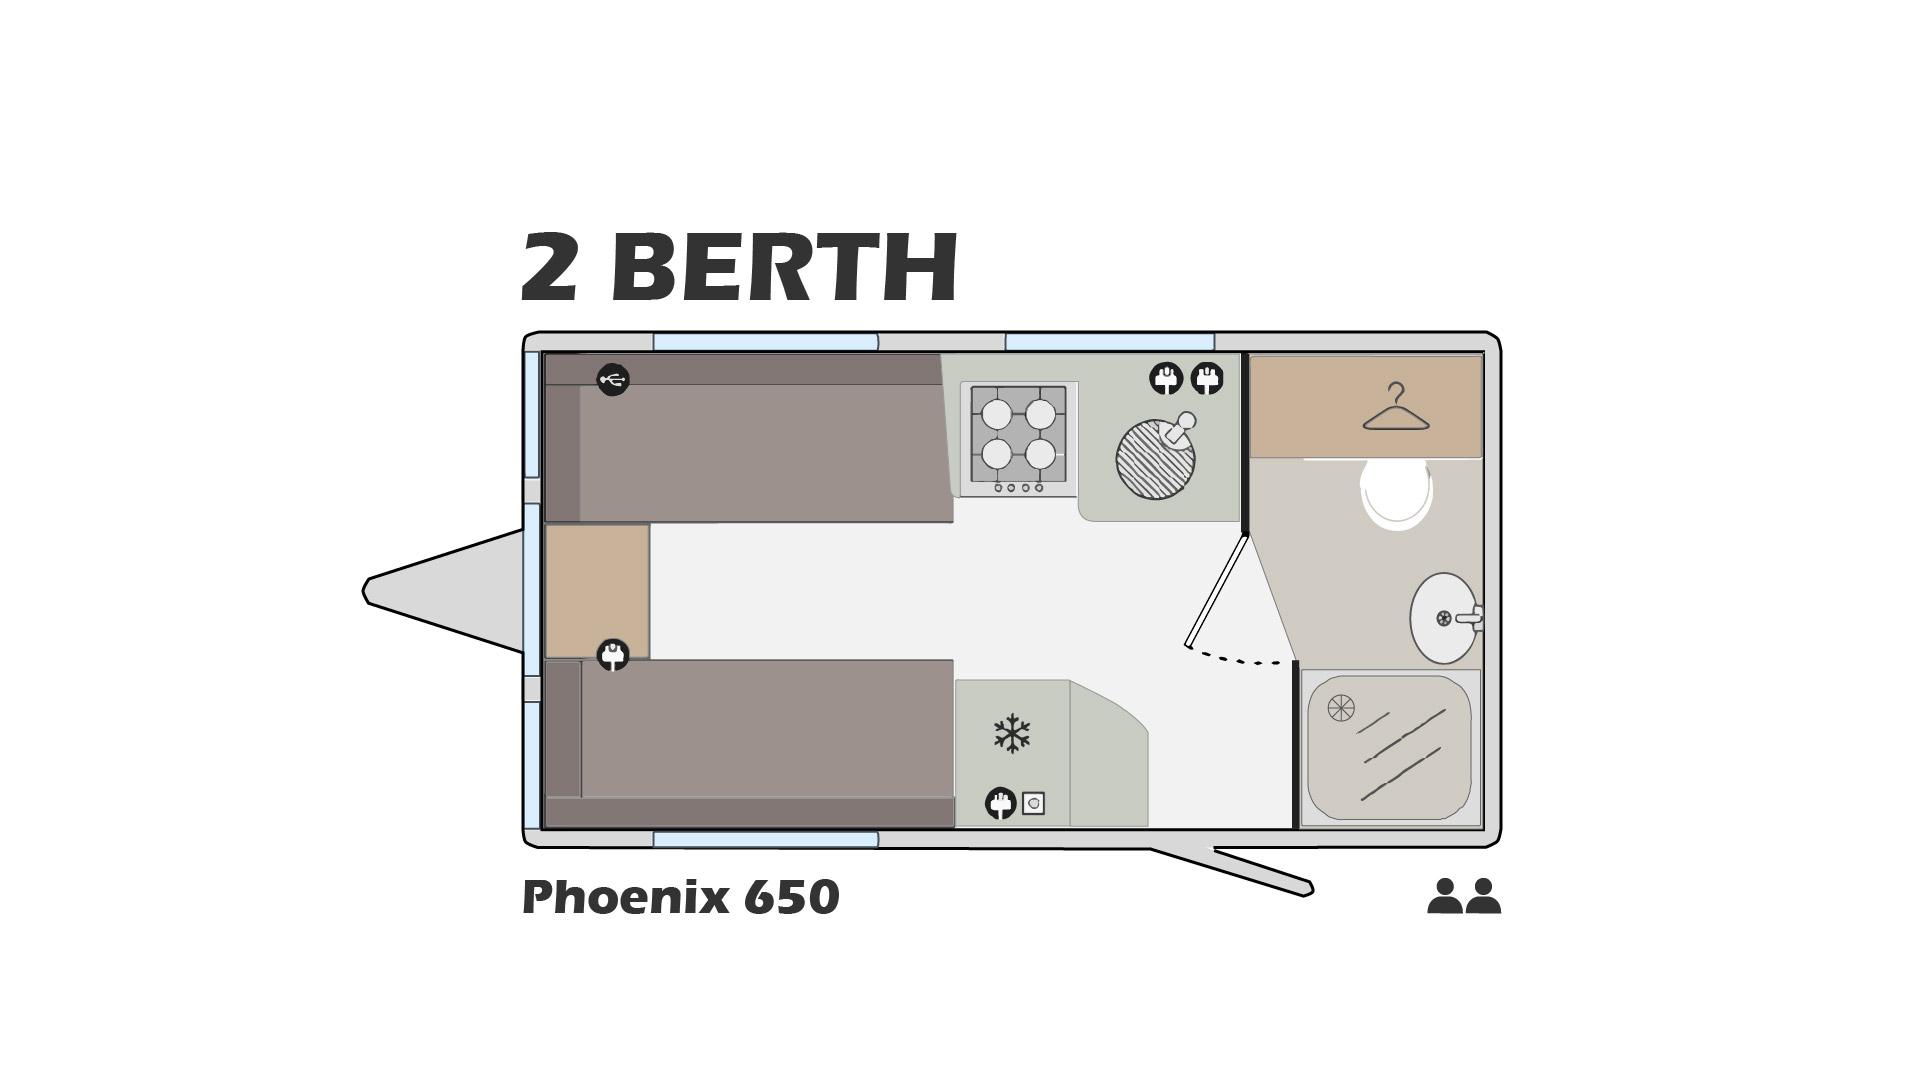 Phoenix 420 Two berth Plan view